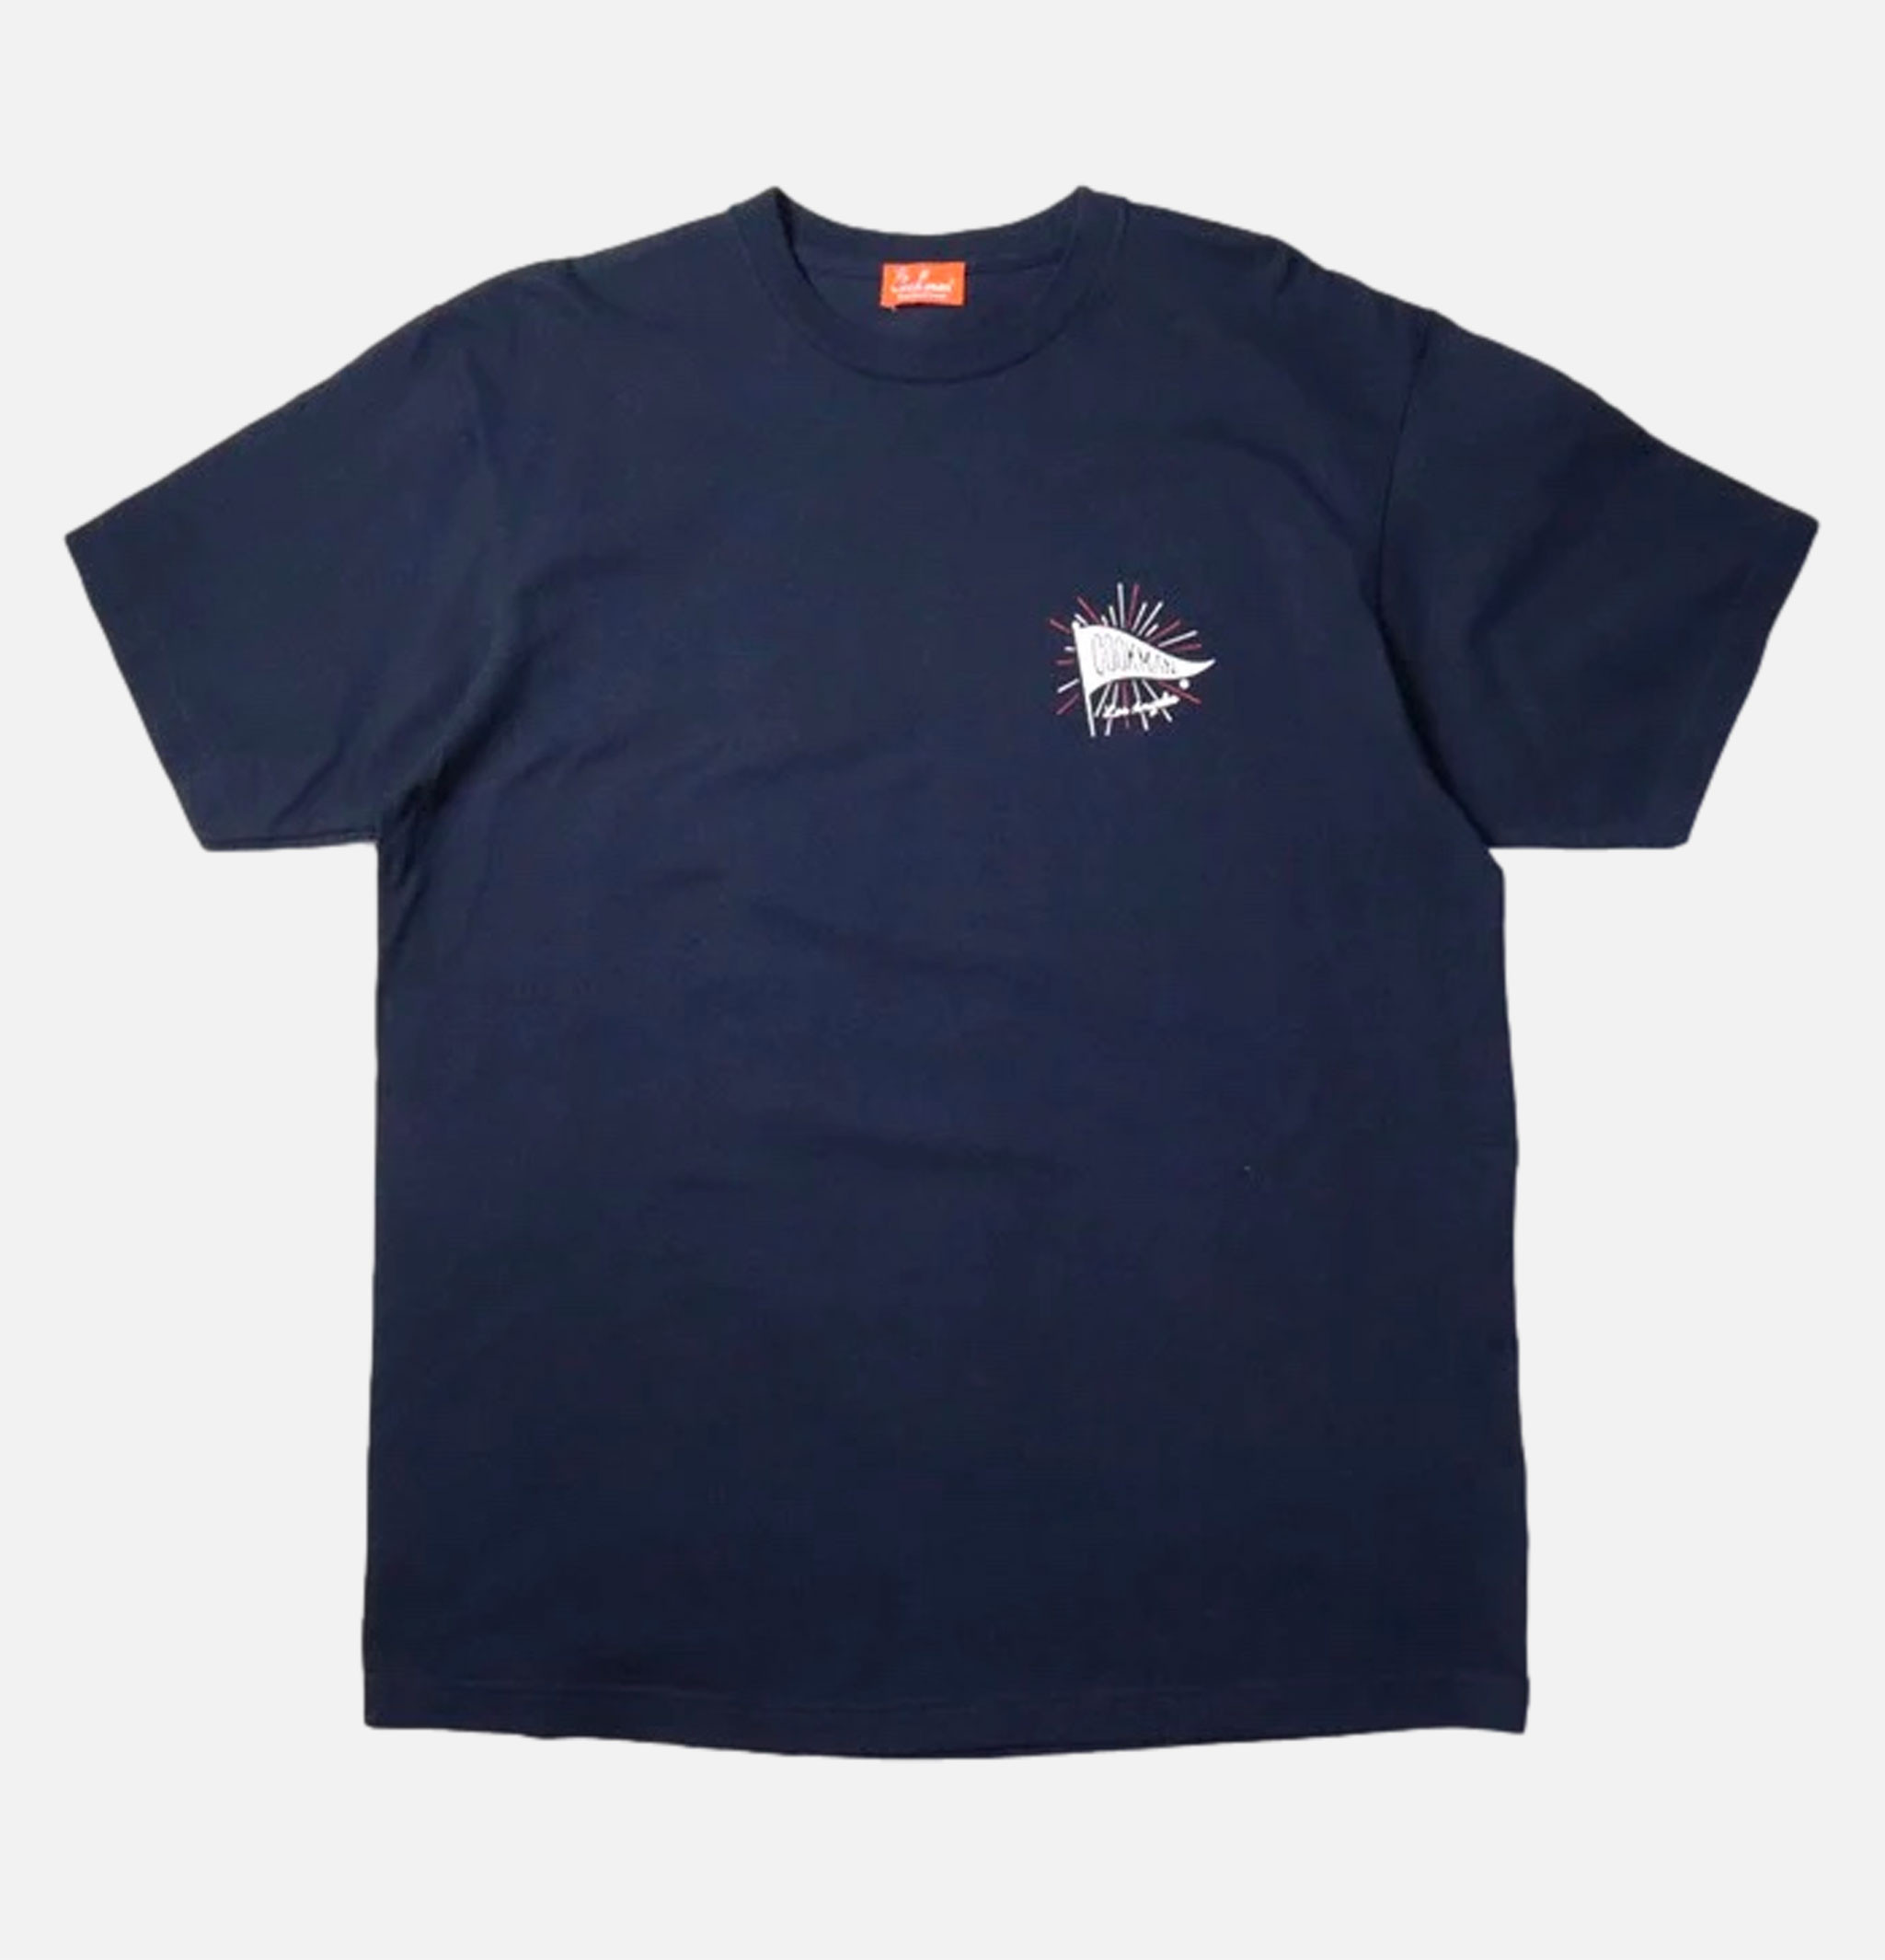 Wind Navy T-shirt